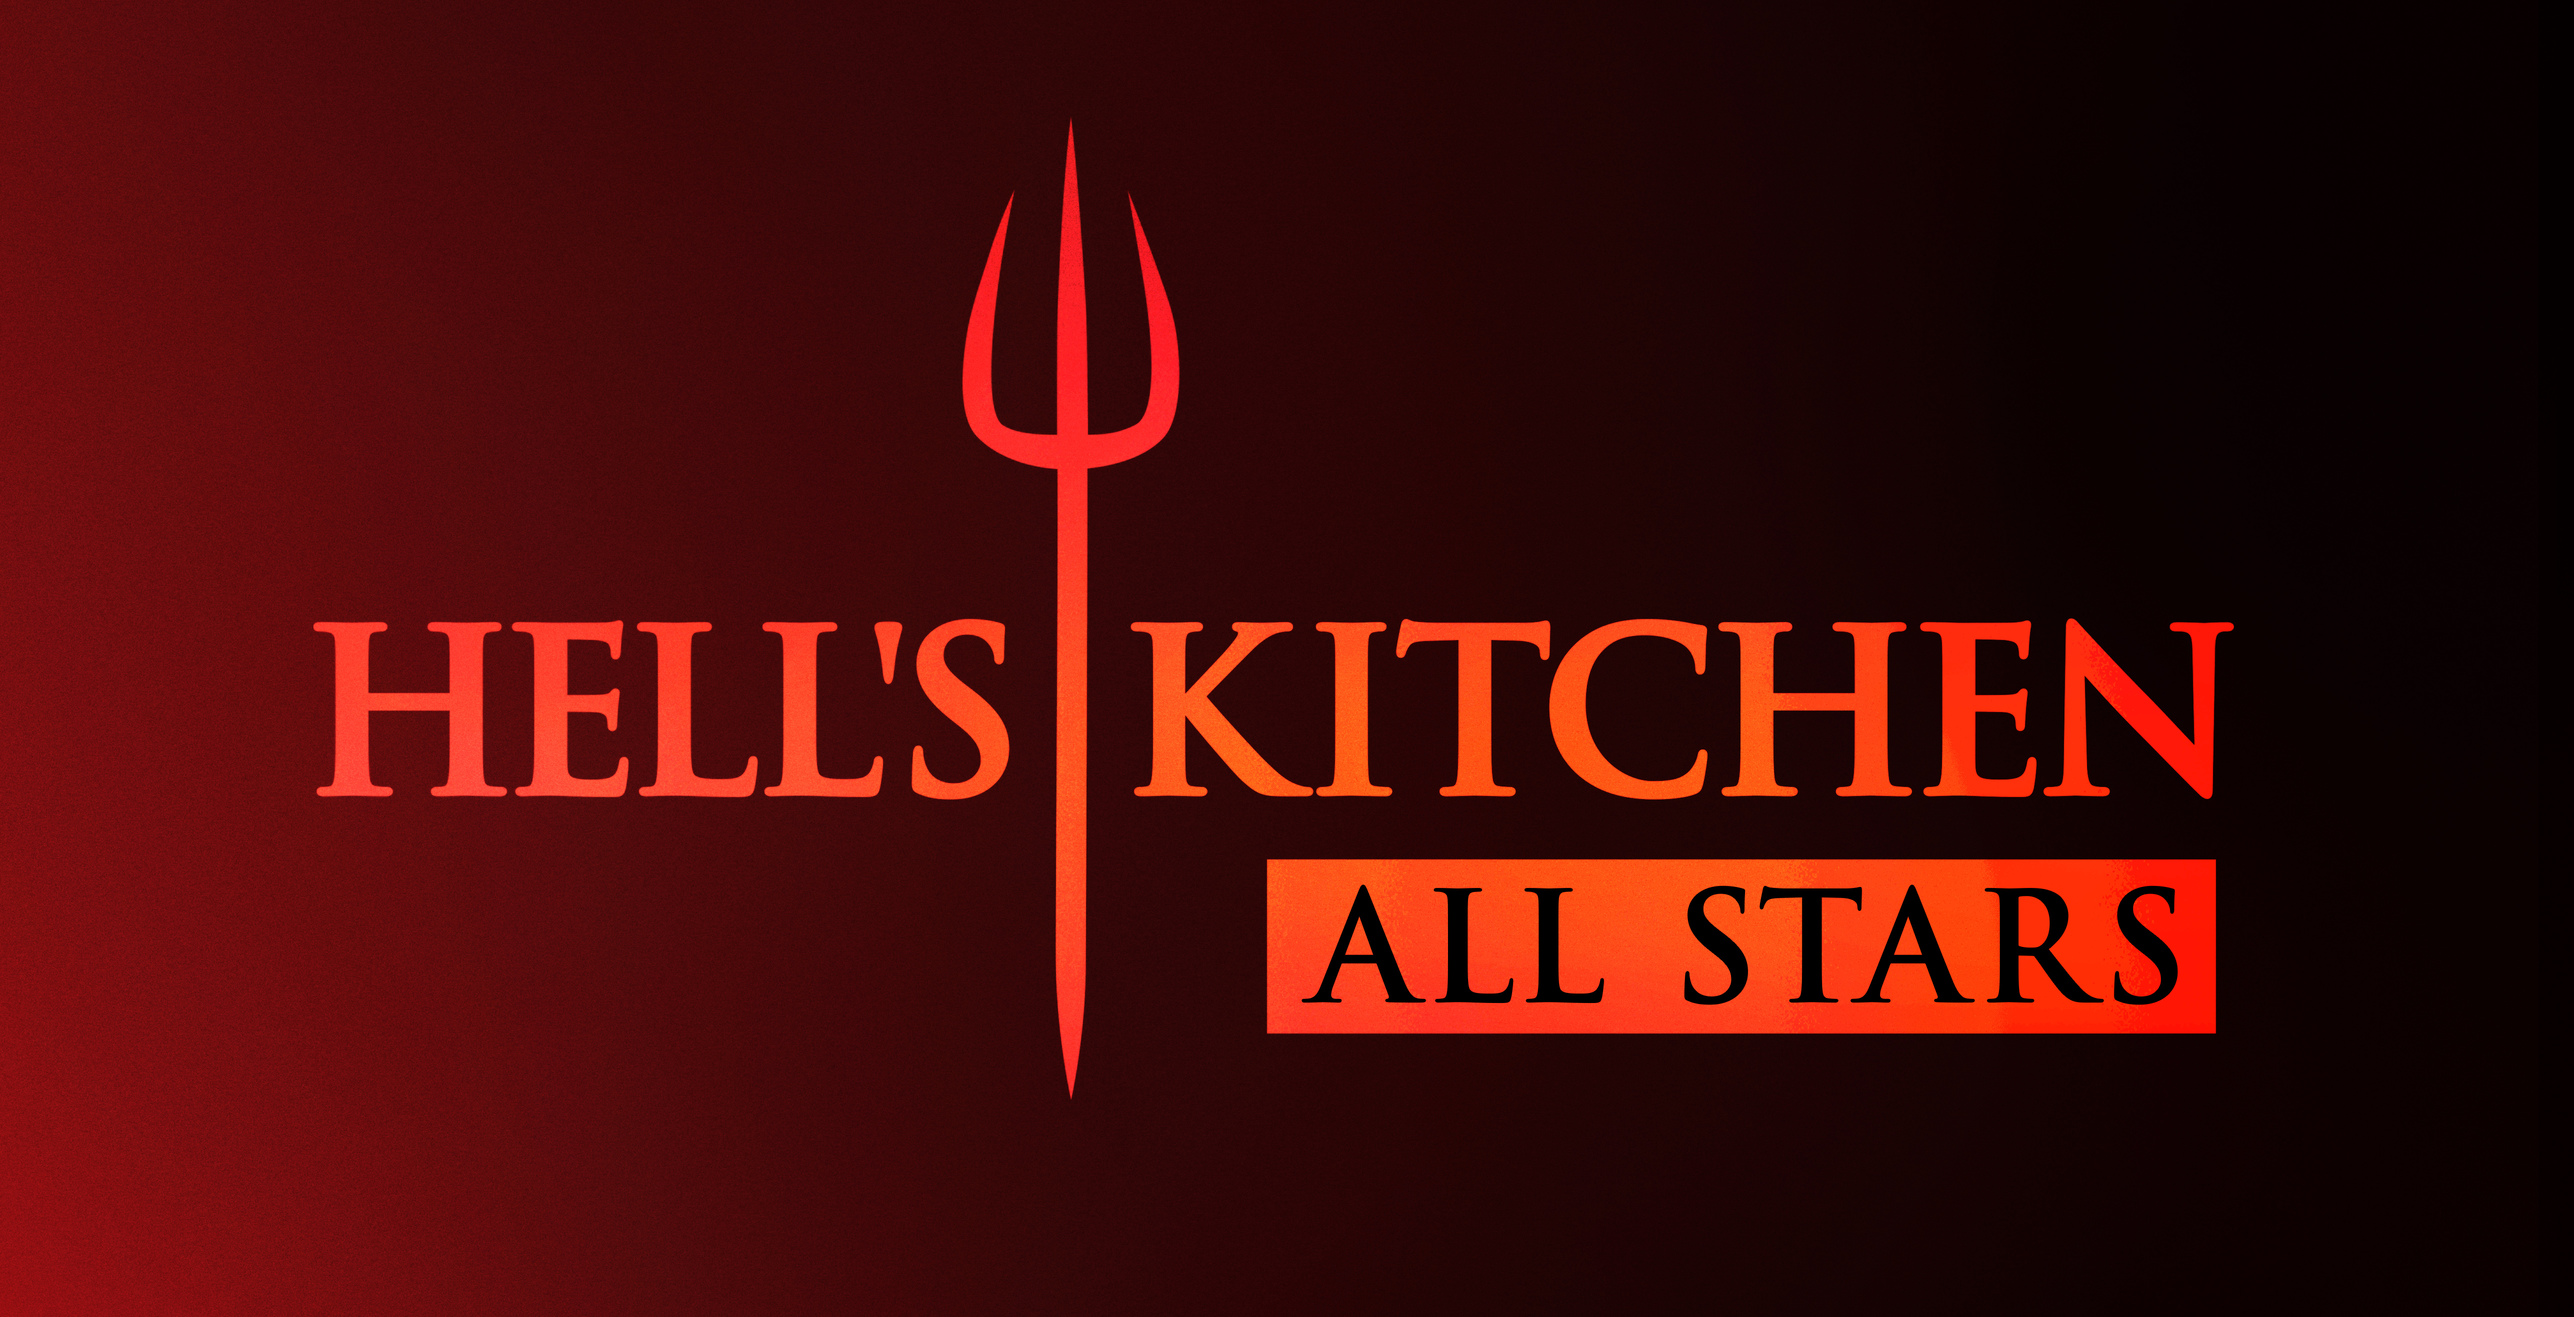 Sneak Peek of ‘Hell’s Kitchen’ Two-Hour Finale Tonight